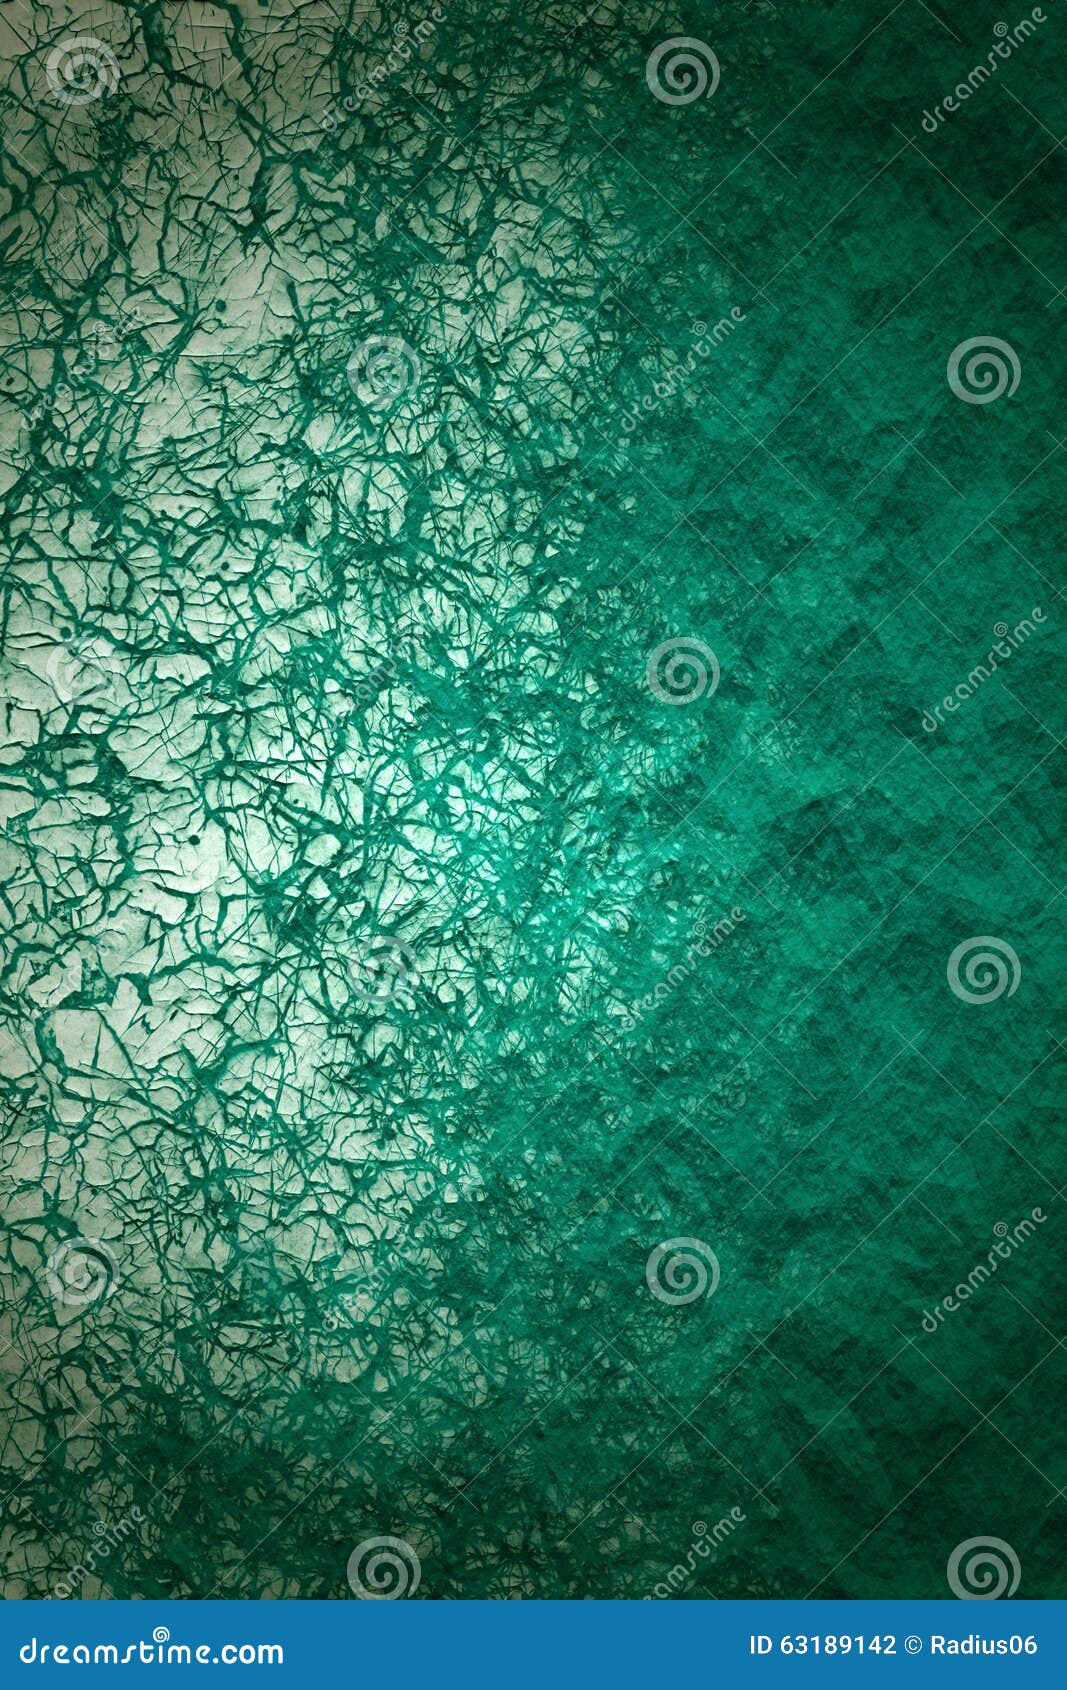 Texture De Papier Froissee Feuille De Papier Chiffonnee Par Vert Photo Stock Image Du Papier Contexte